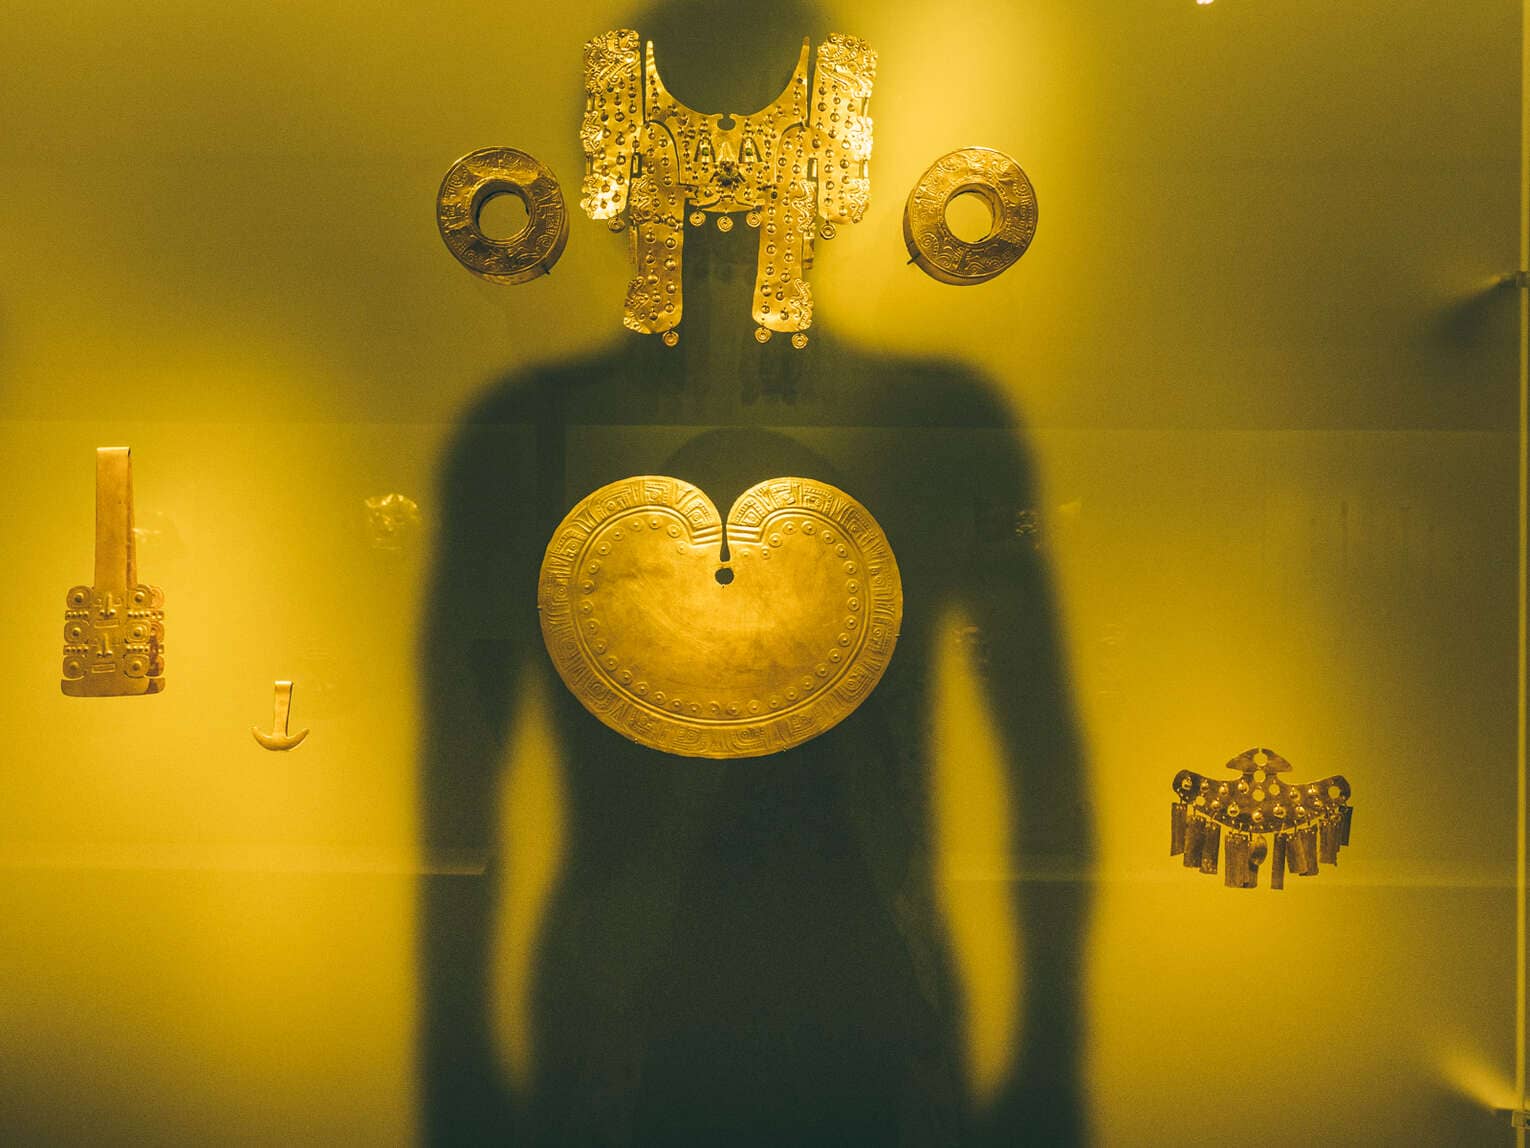 Musée de l'or de Bogota, une des visites incontournables en Colombie !